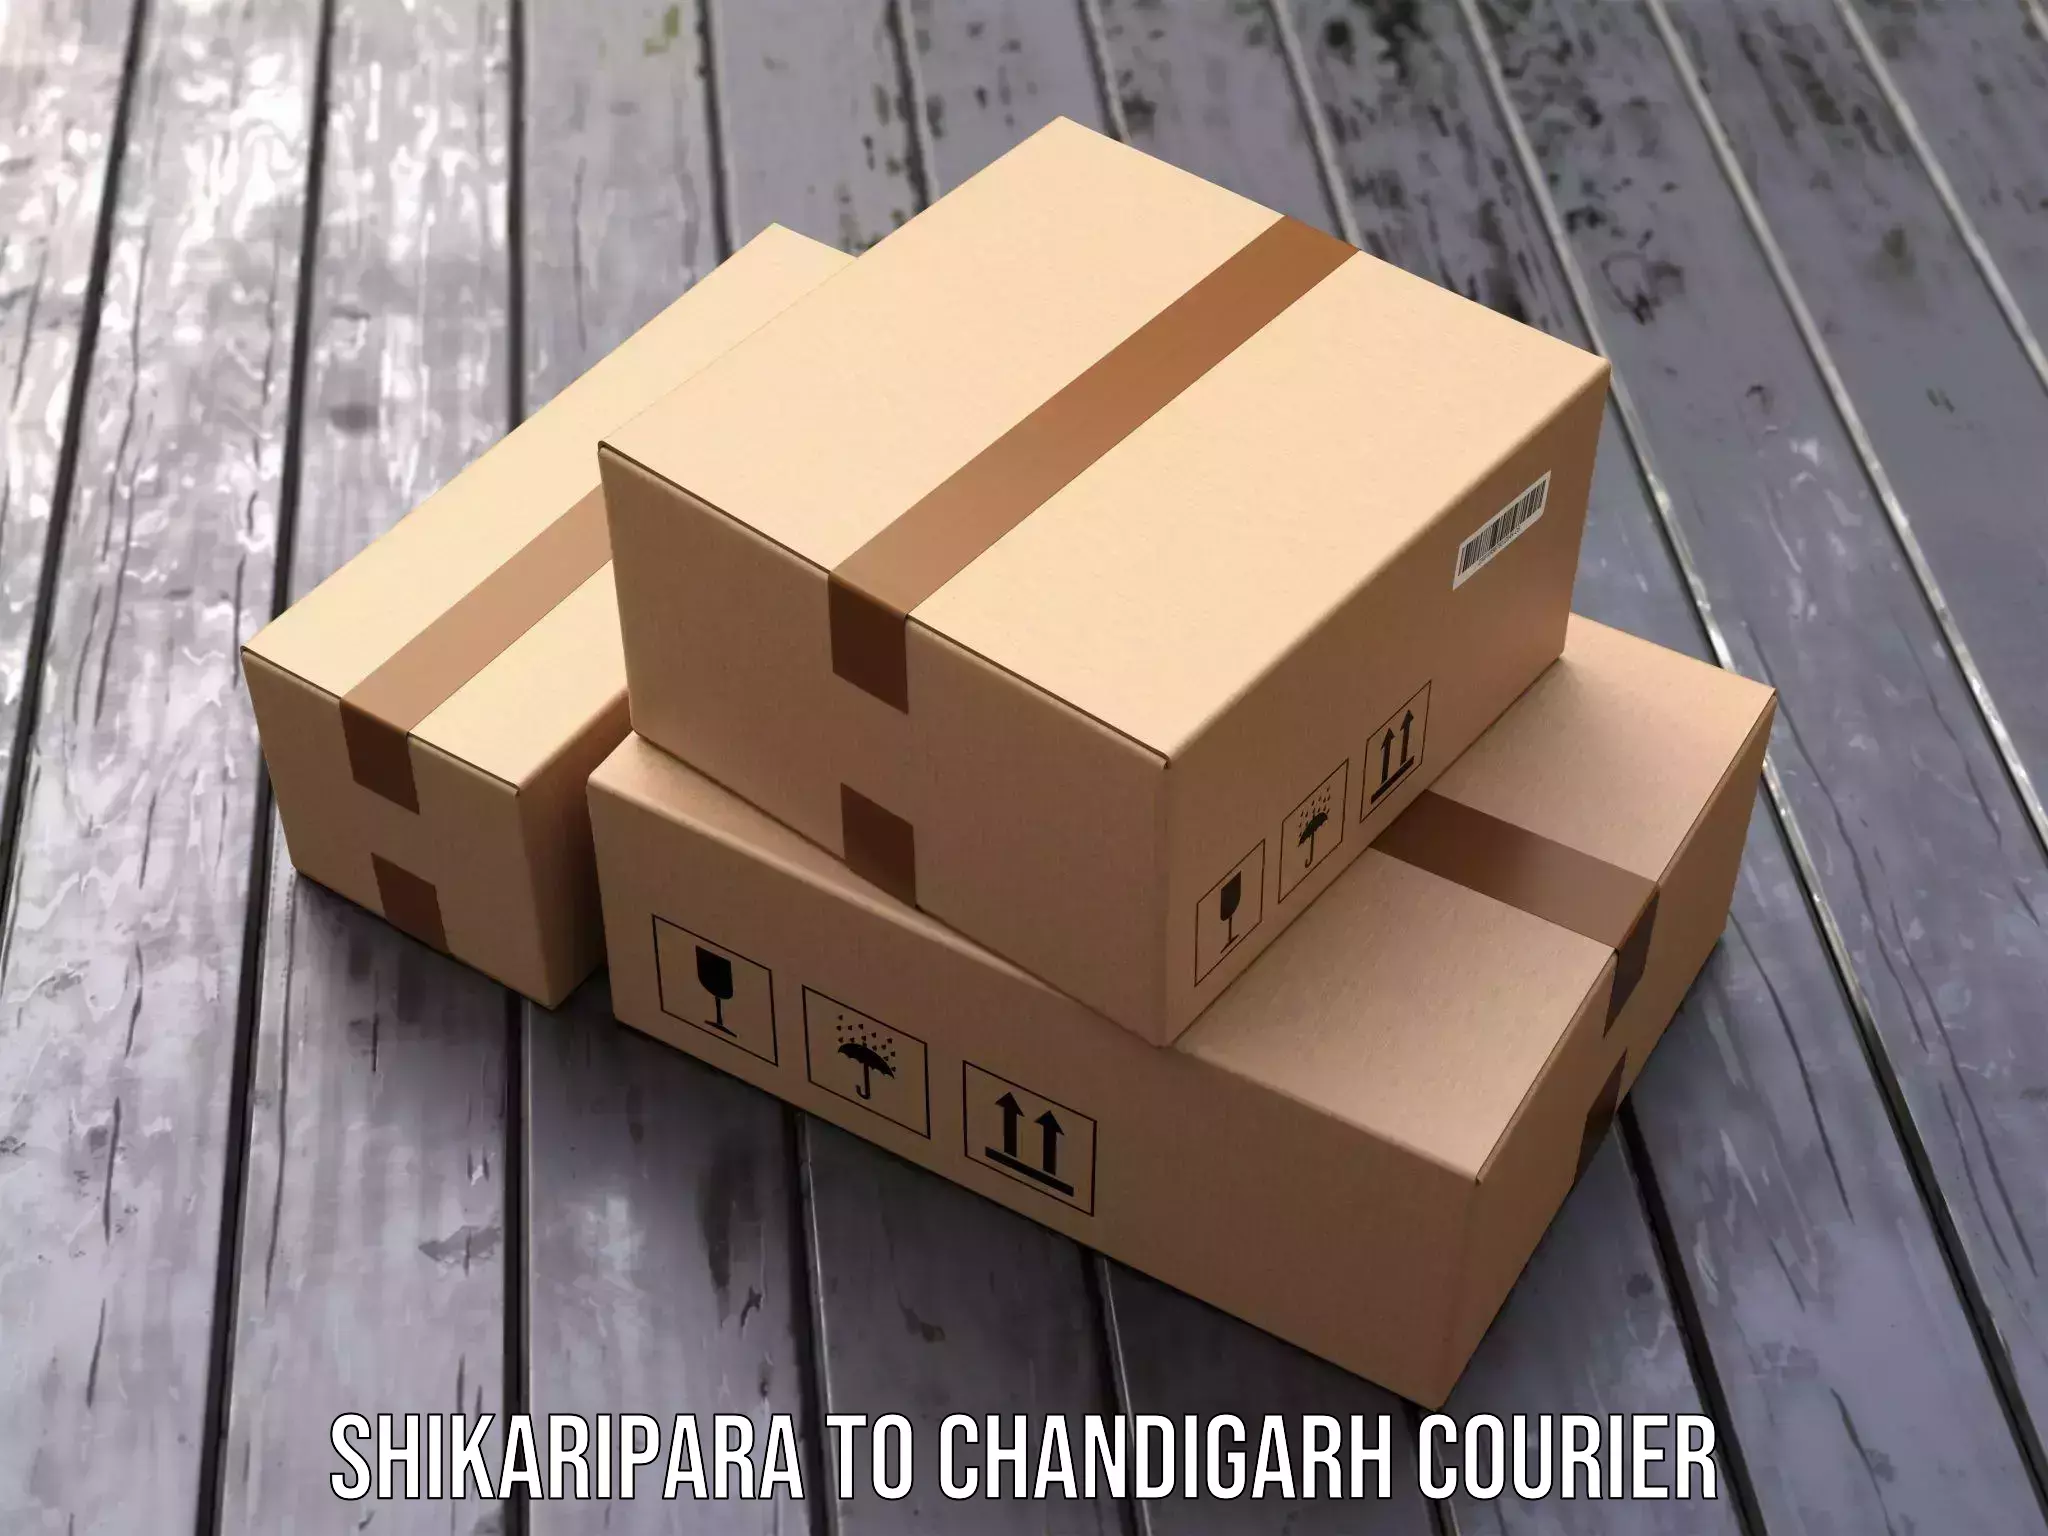 Next day courier Shikaripara to Chandigarh